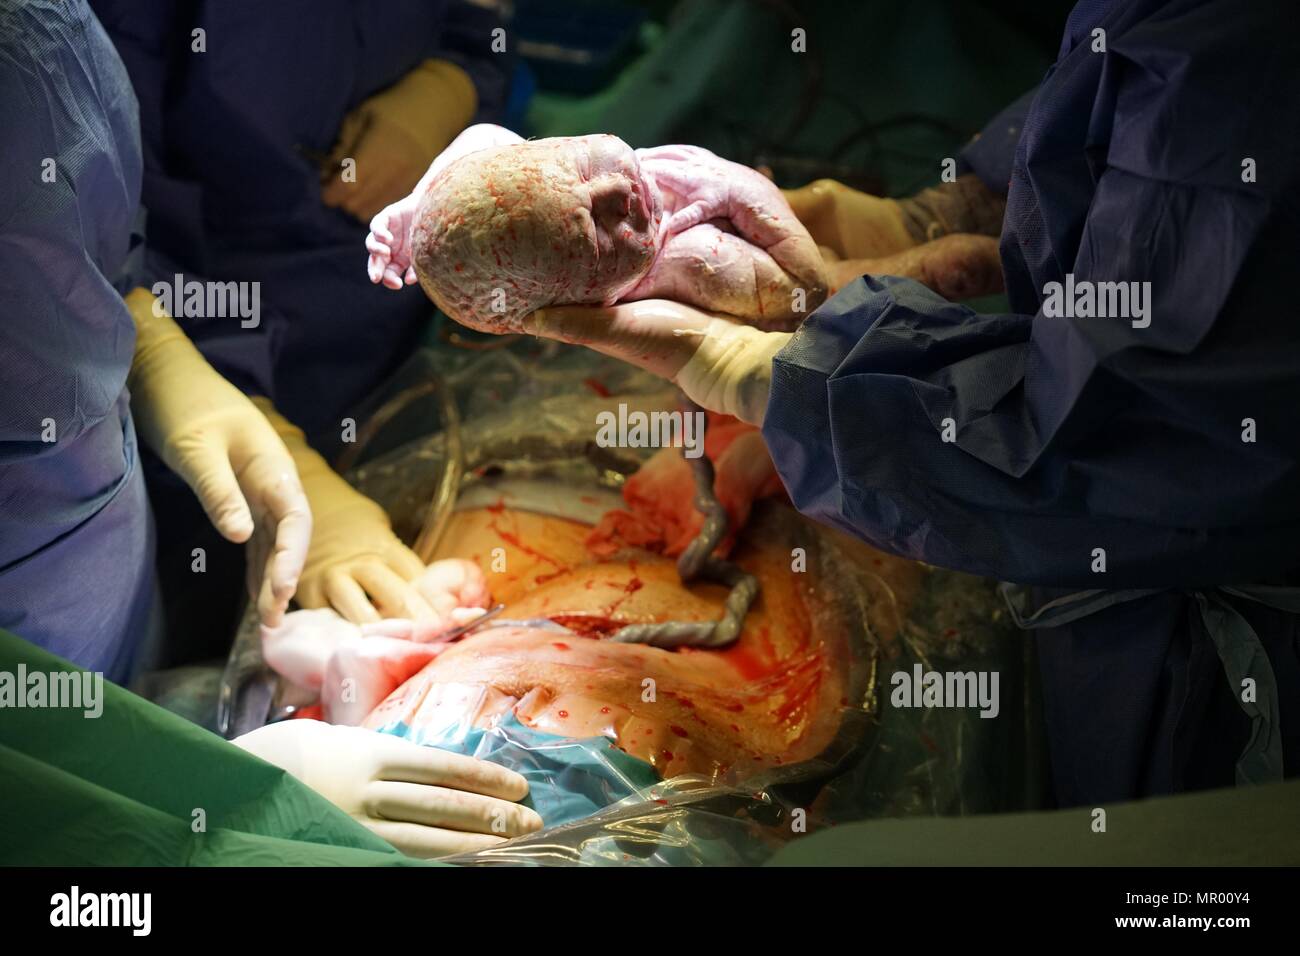 Il bambino è nato da parto cesareo in ospedale coperta in vernix, cordone ombelicale ancora attaccato e madre della ferita chirurgica in background Foto Stock